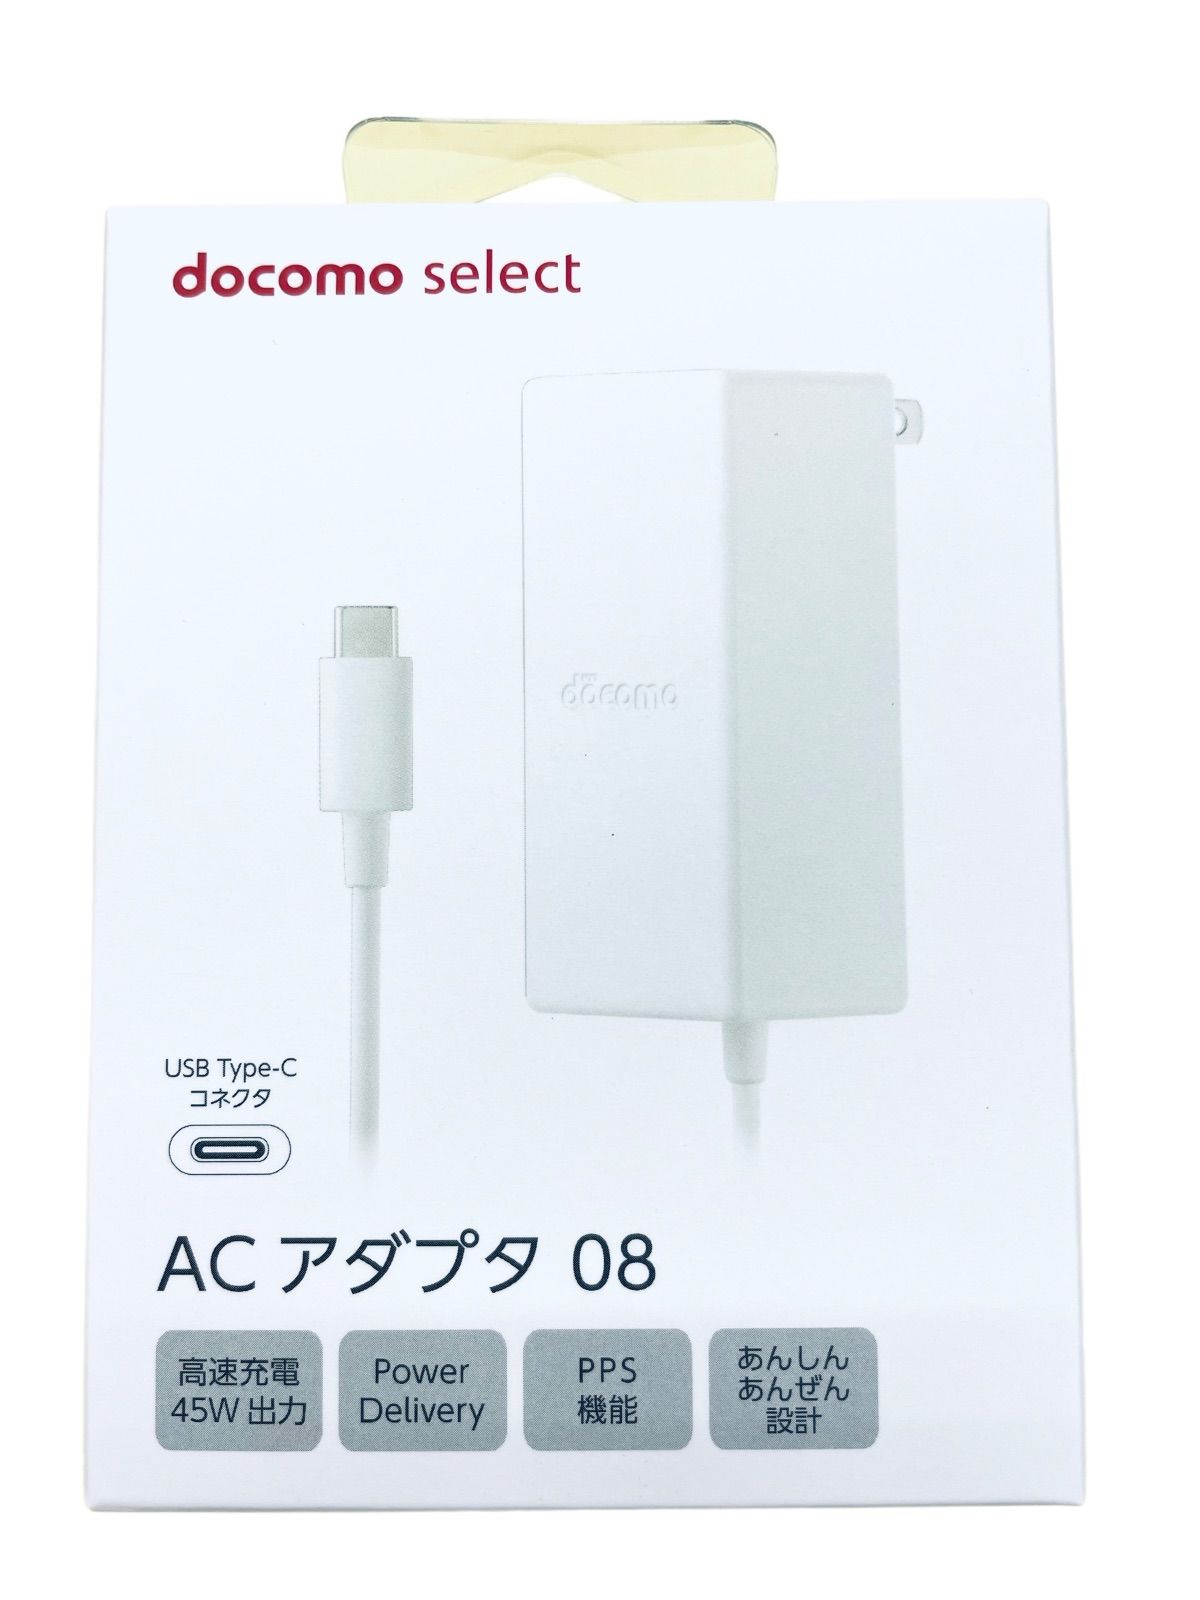 豪奢な Docomo select AC select 07 ホワイト USB AC アダプタ07 